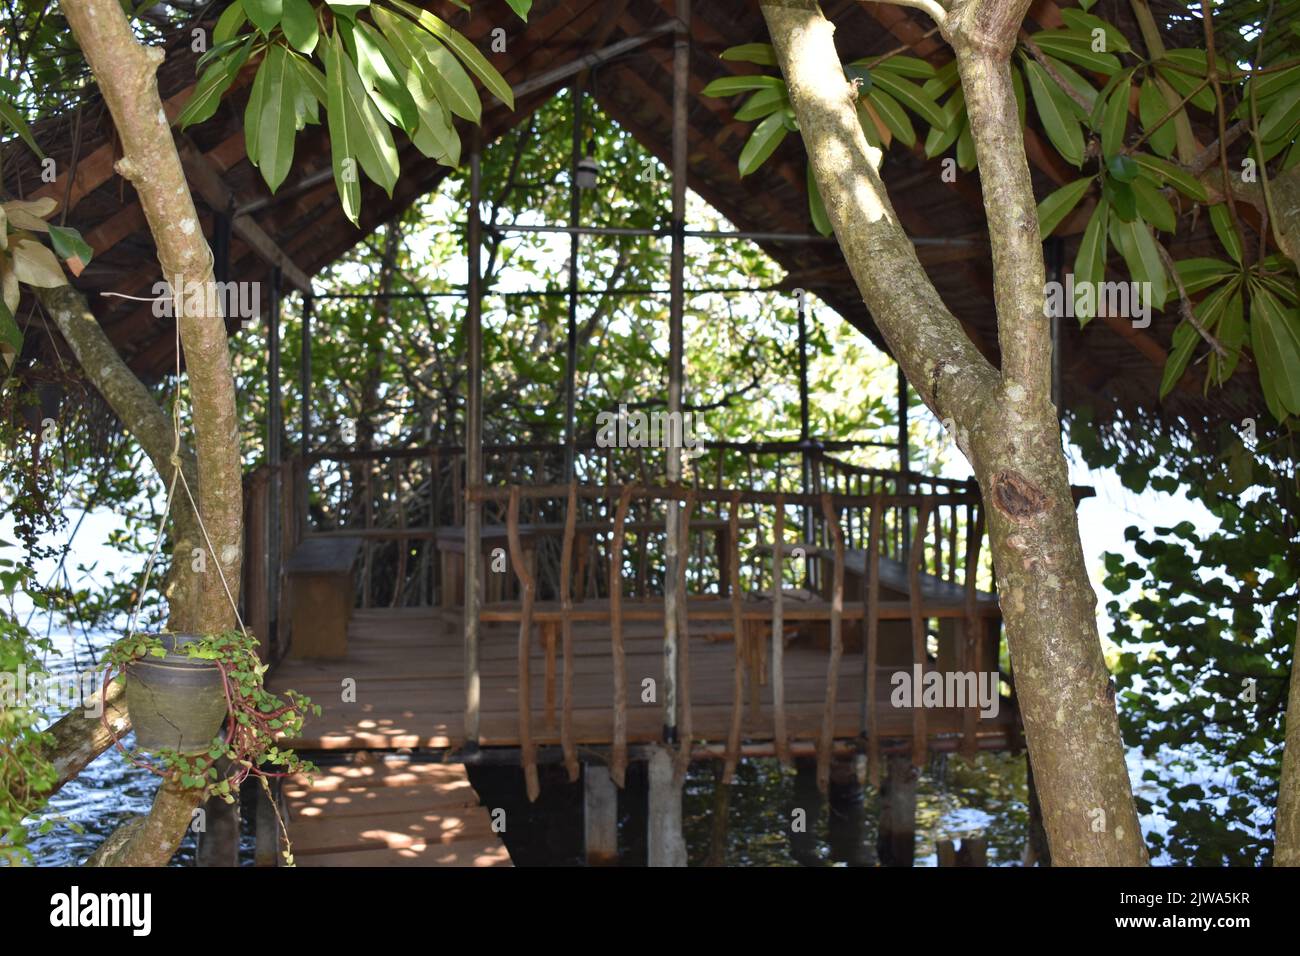 Cinnamon Islet est situé sur le Madhu Ganga est situé vers le sud du Sri Lanka. L'îlot est habité par la famille du producteur de cannelle G. H. Premadasa, qui est assez aimable pour expliquer aux visiteurs comment peler la cannelle pour la production d'huile de cannelle. Les gens peuvent avoir un thé mélangé à la cannelle et acheter de la cannelle de la plus haute qualité ici. La cannelle est une épice qui vient de l'écorce intérieure de l'arbre tropical Cinnamomum, est vendu comme des quills roulés (bâtons de cannelle) ou moulu dans une fine poudre. Sri Lanka. Banque D'Images